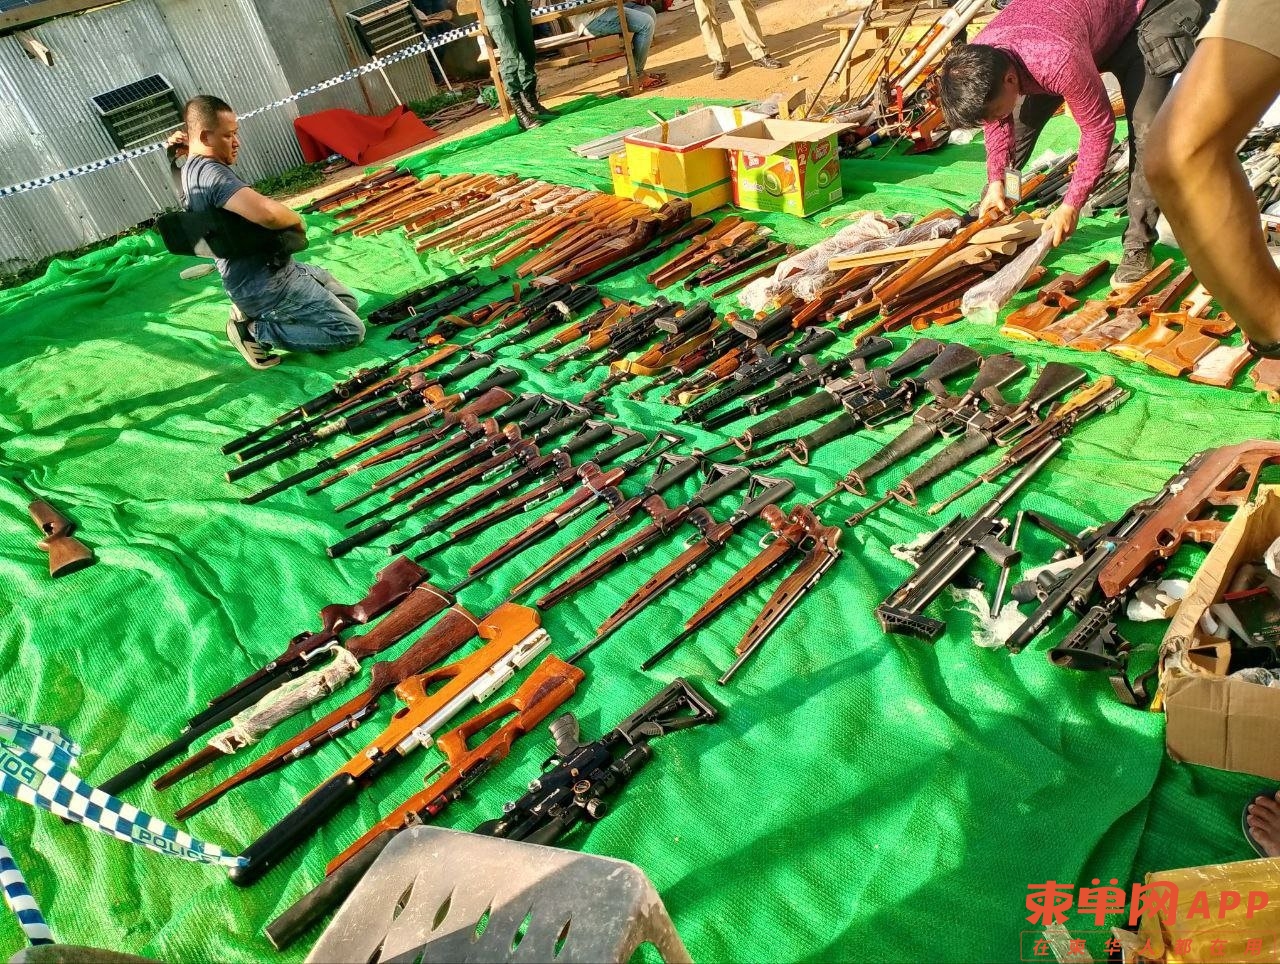 柬埔寨查获大批军火，包括AK47、M16